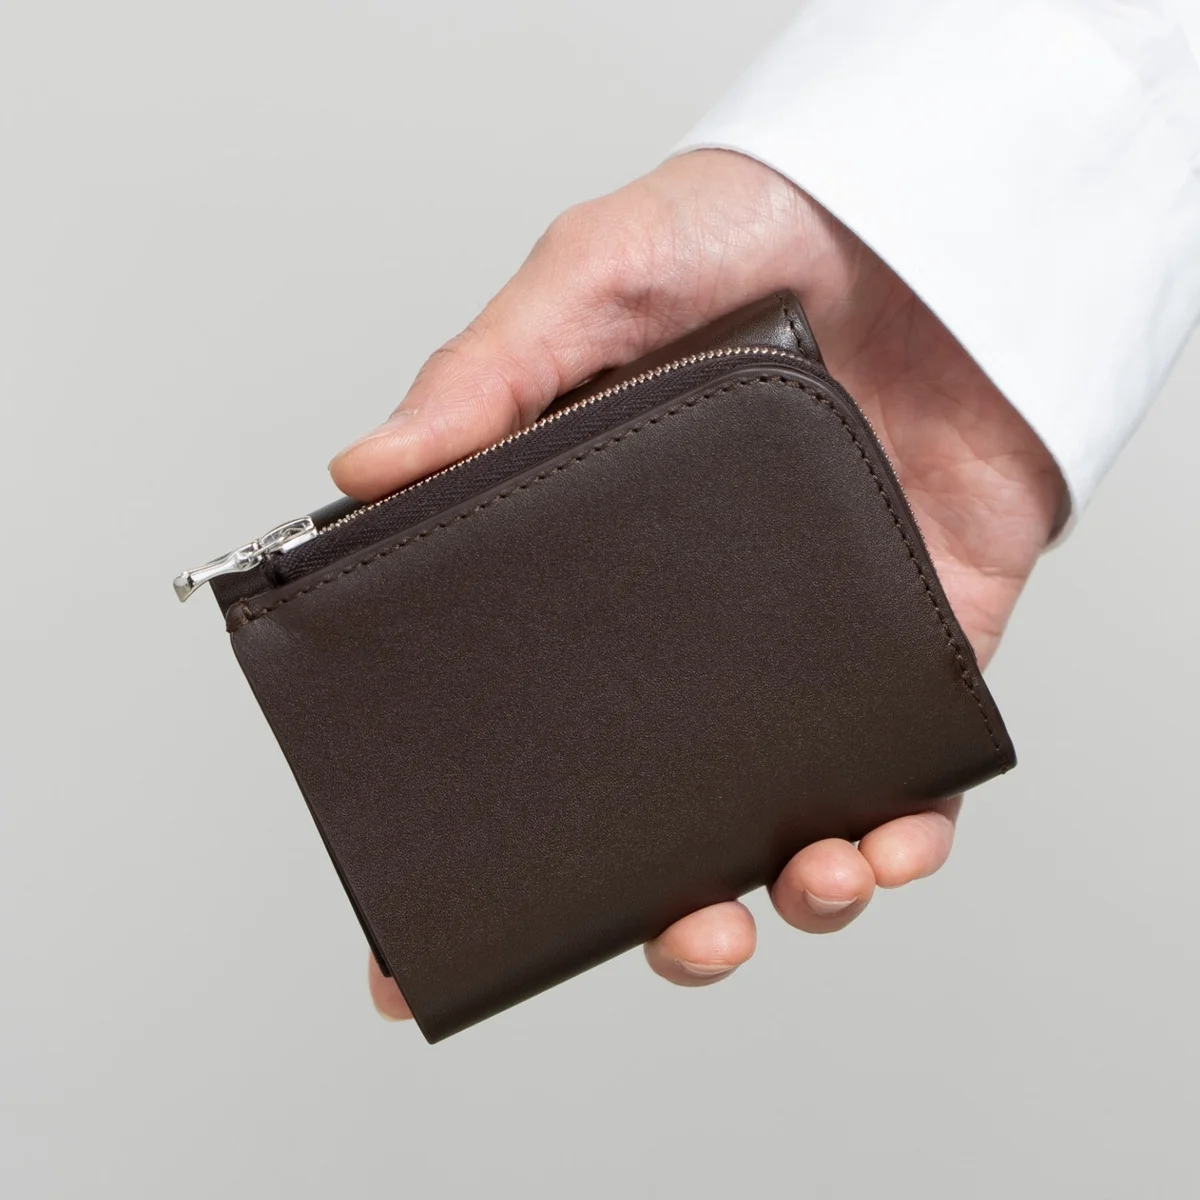 洗練された財布とコインケース。【アエタ】と【グラフペーパー】のコラボレーションアイテムに、新色ブラウンが追加